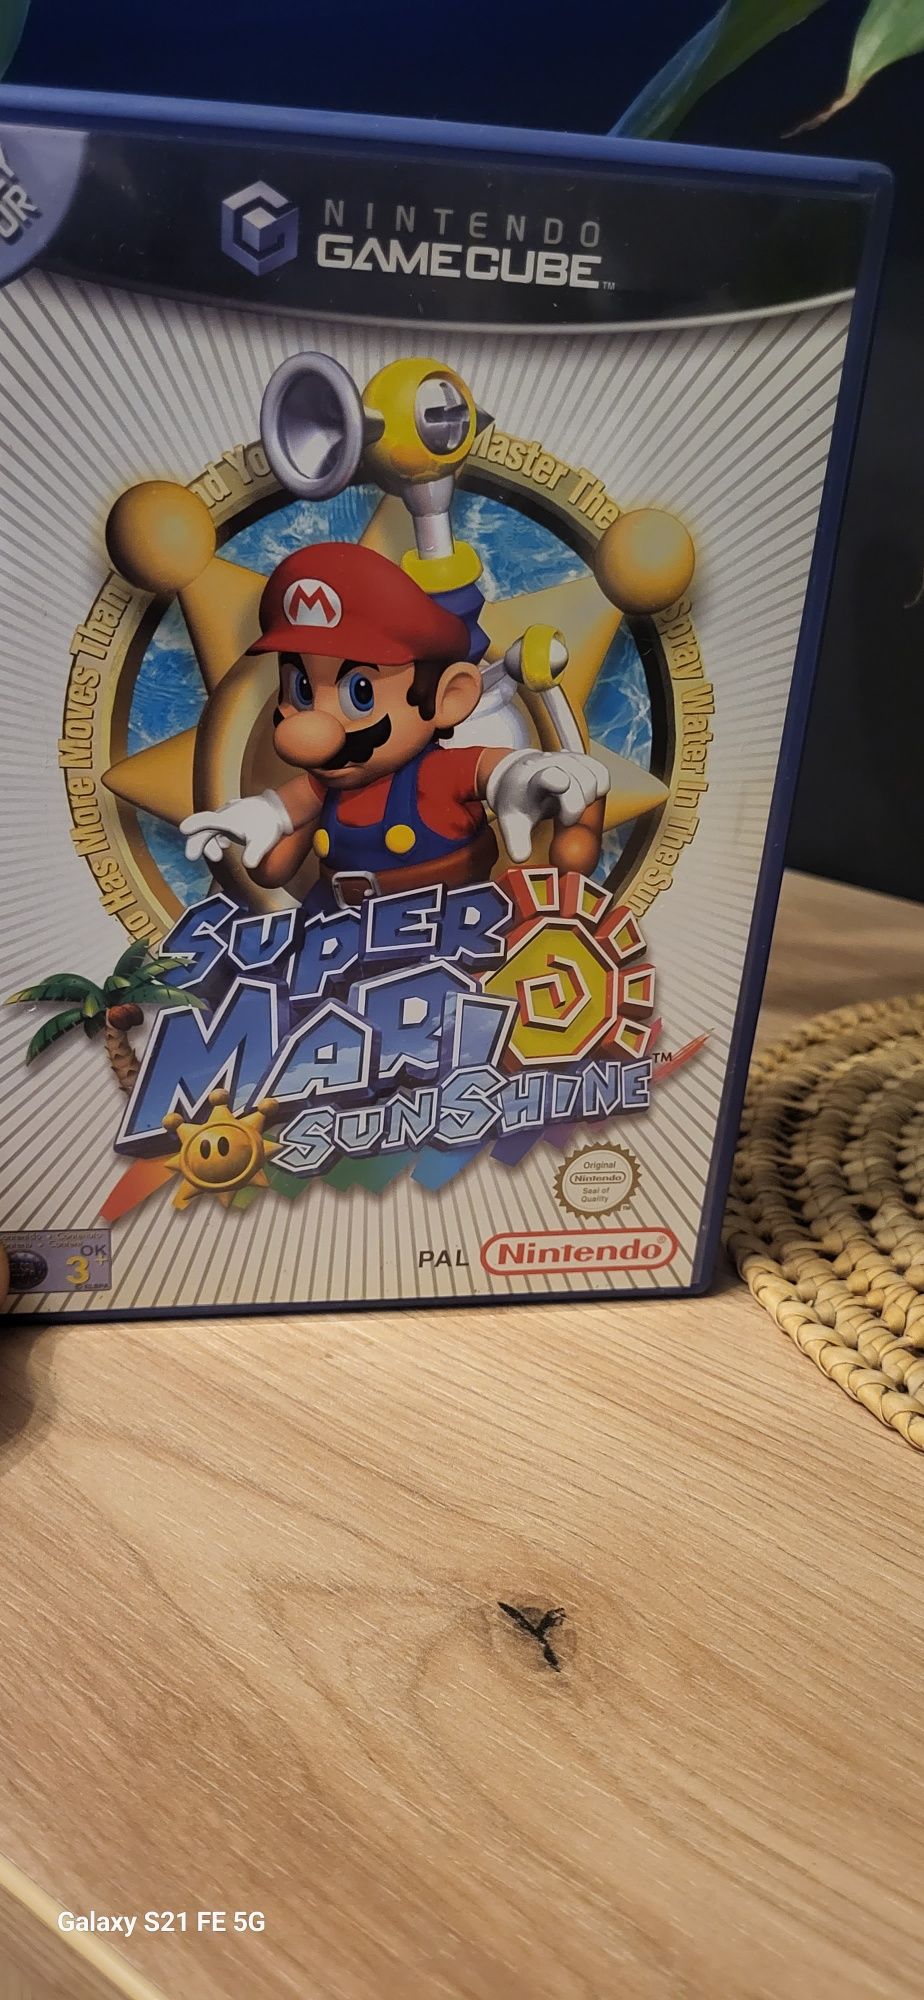 Super Mario sunshine gamecube